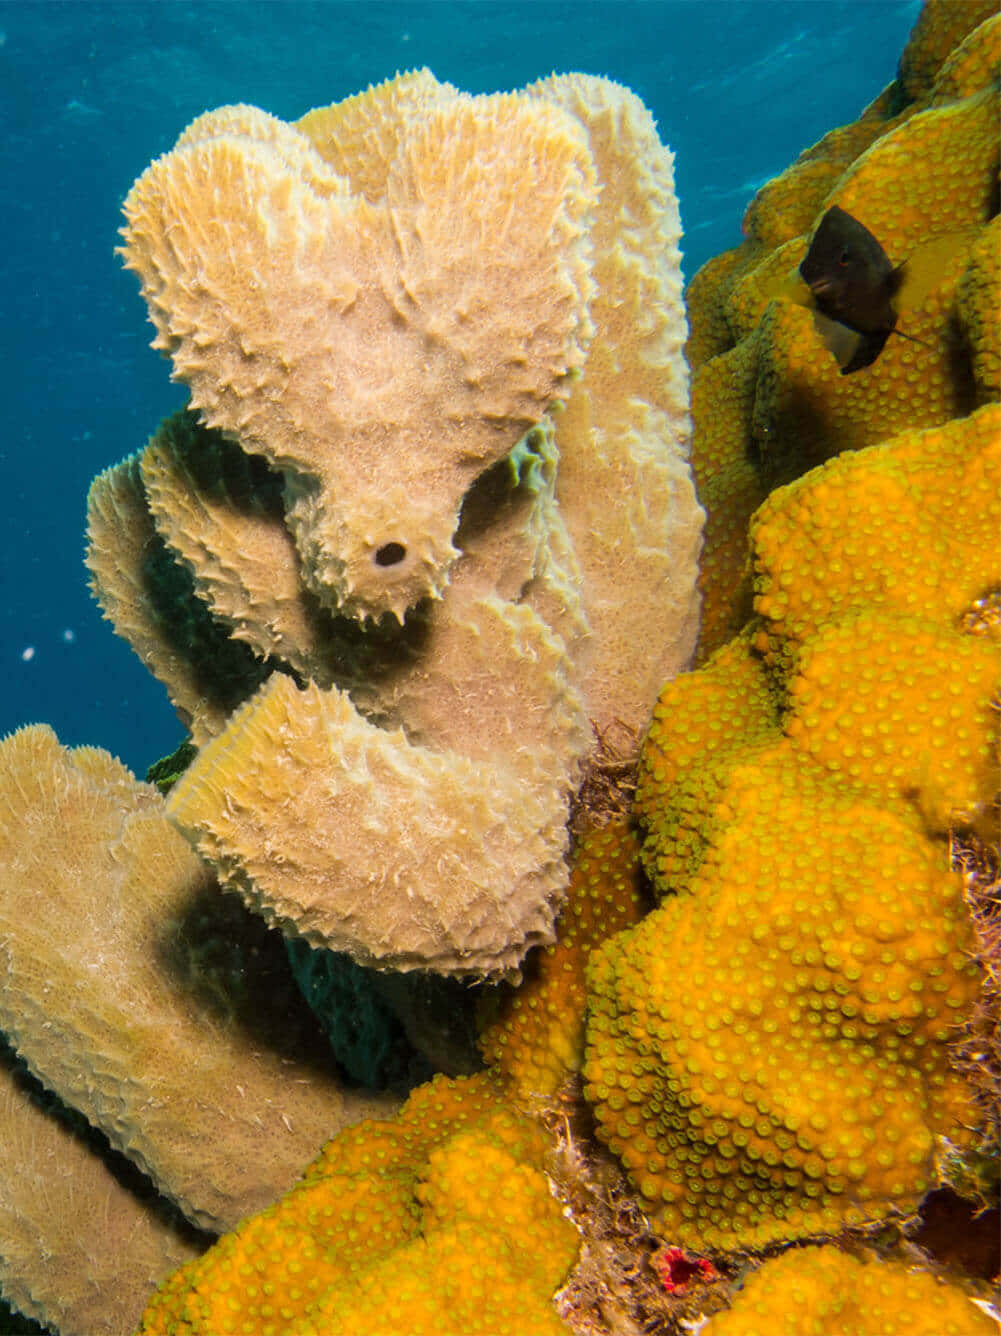 Underwater Spongeand Coral Scene Wallpaper